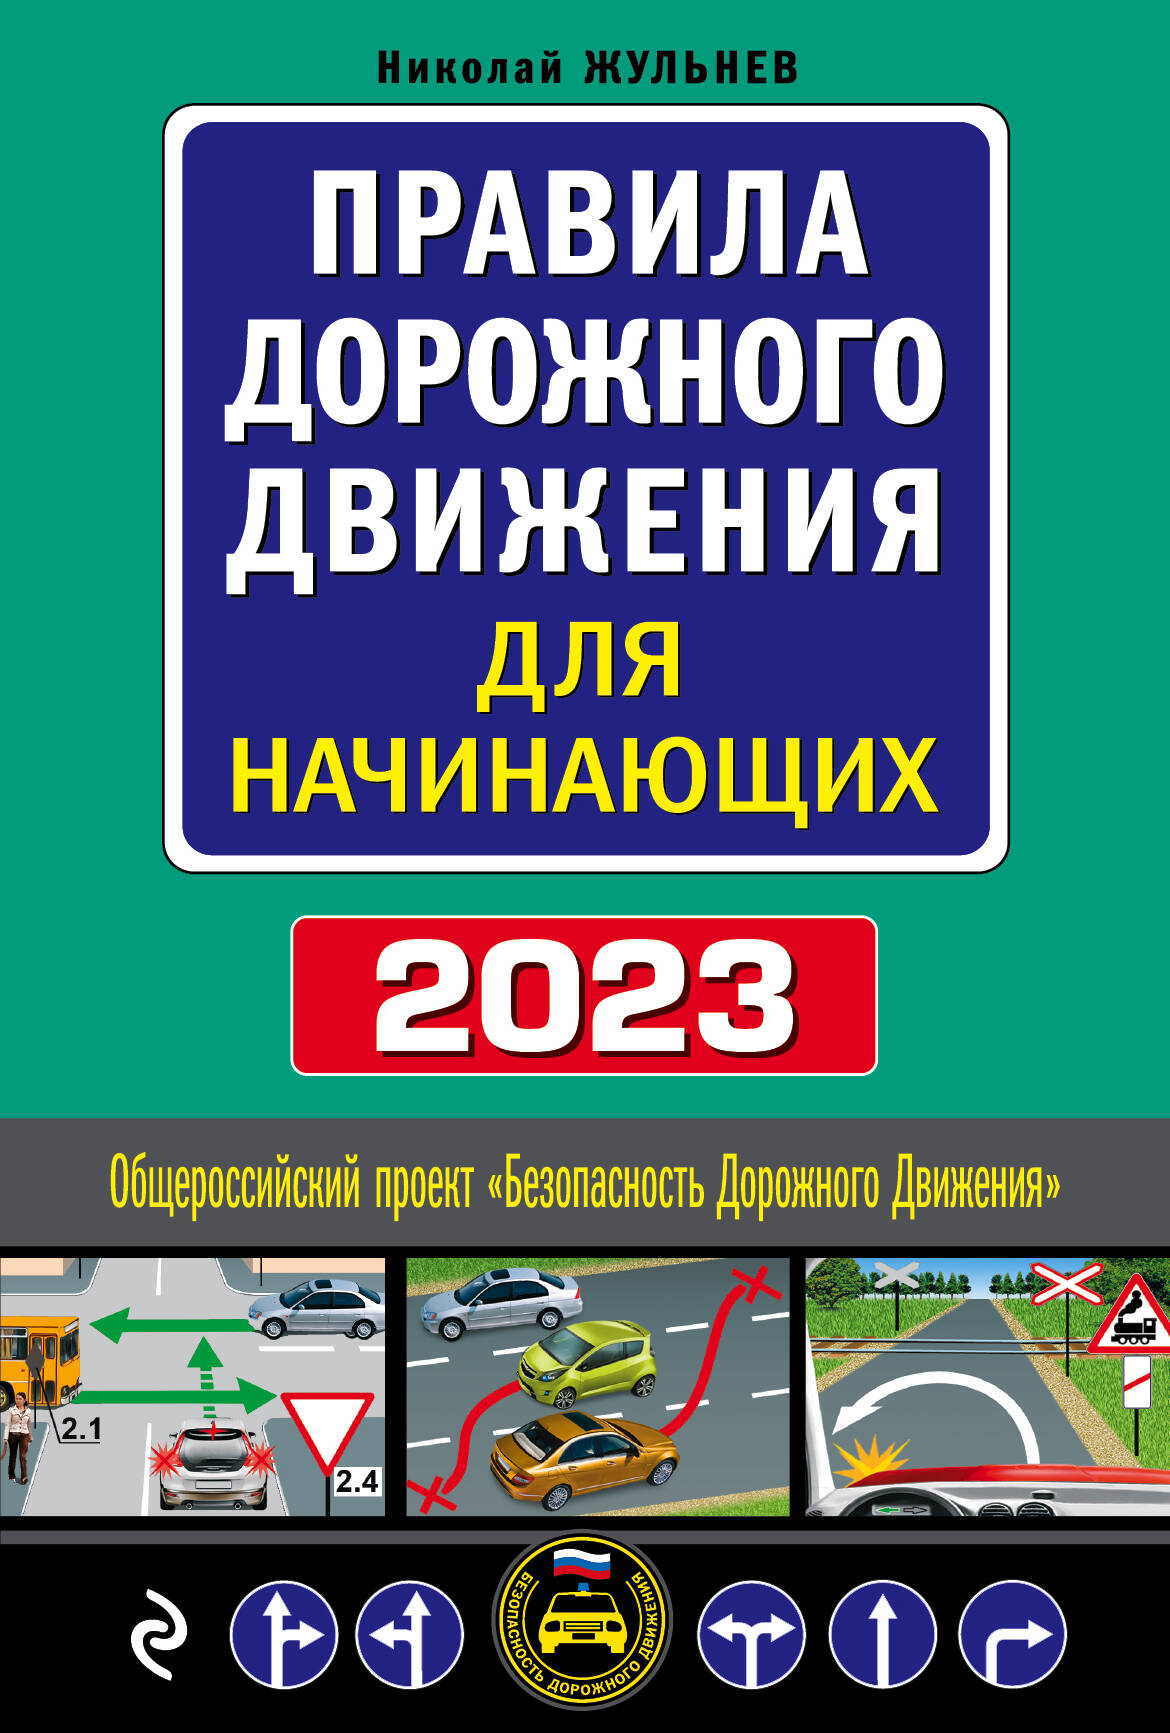 Жульнев Николай Яковлевич Правила дорожного движения для начинающих, 2023: текст с последними изменениями и дополнениями